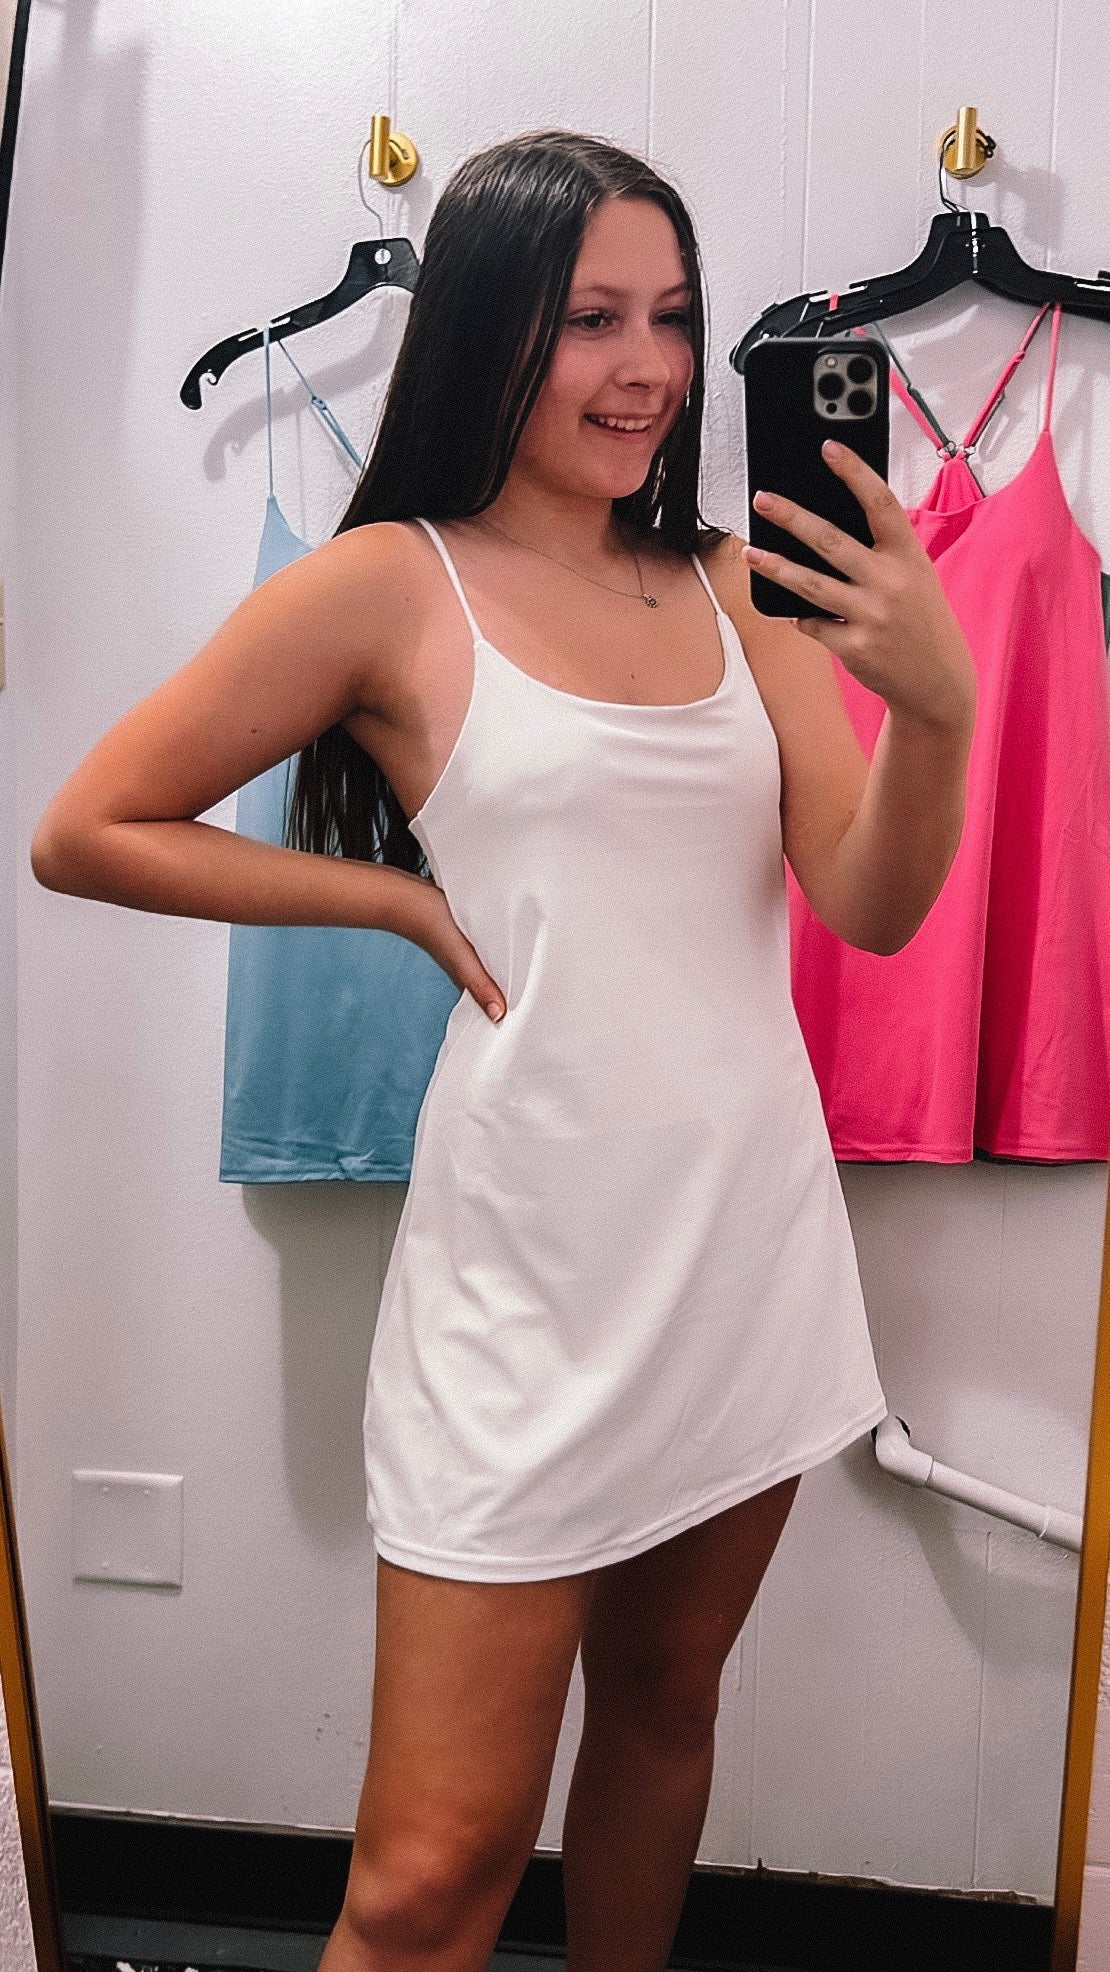 Tennis dress